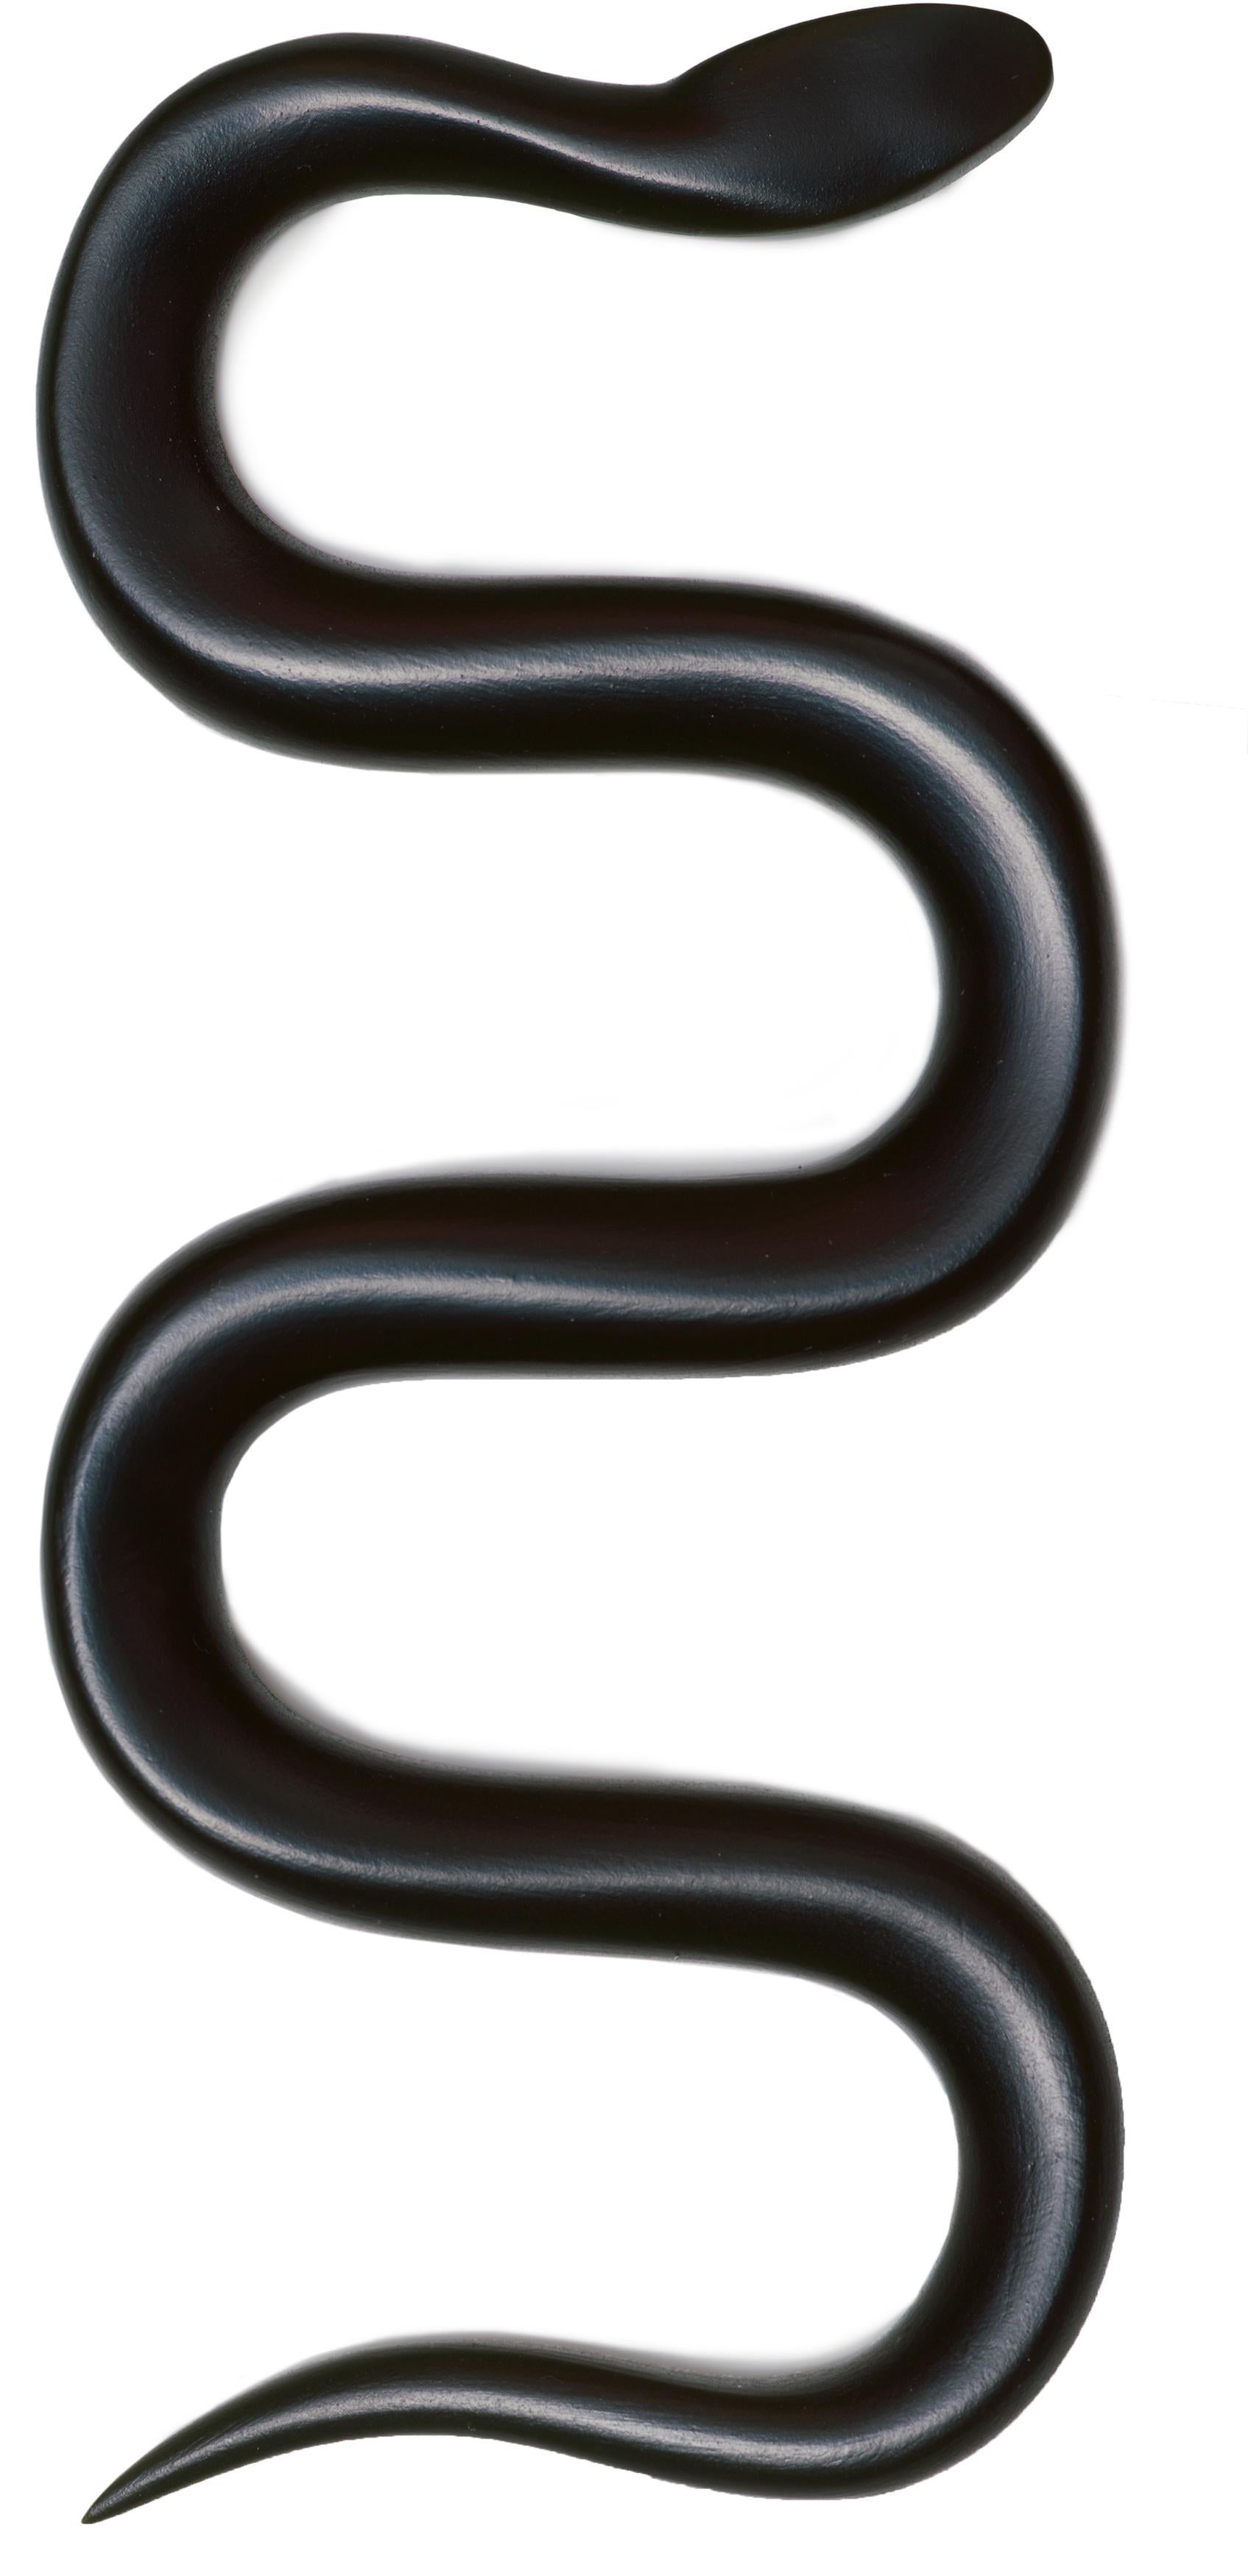 Schlange / Snake - Sculpture by Katharina Fritsch